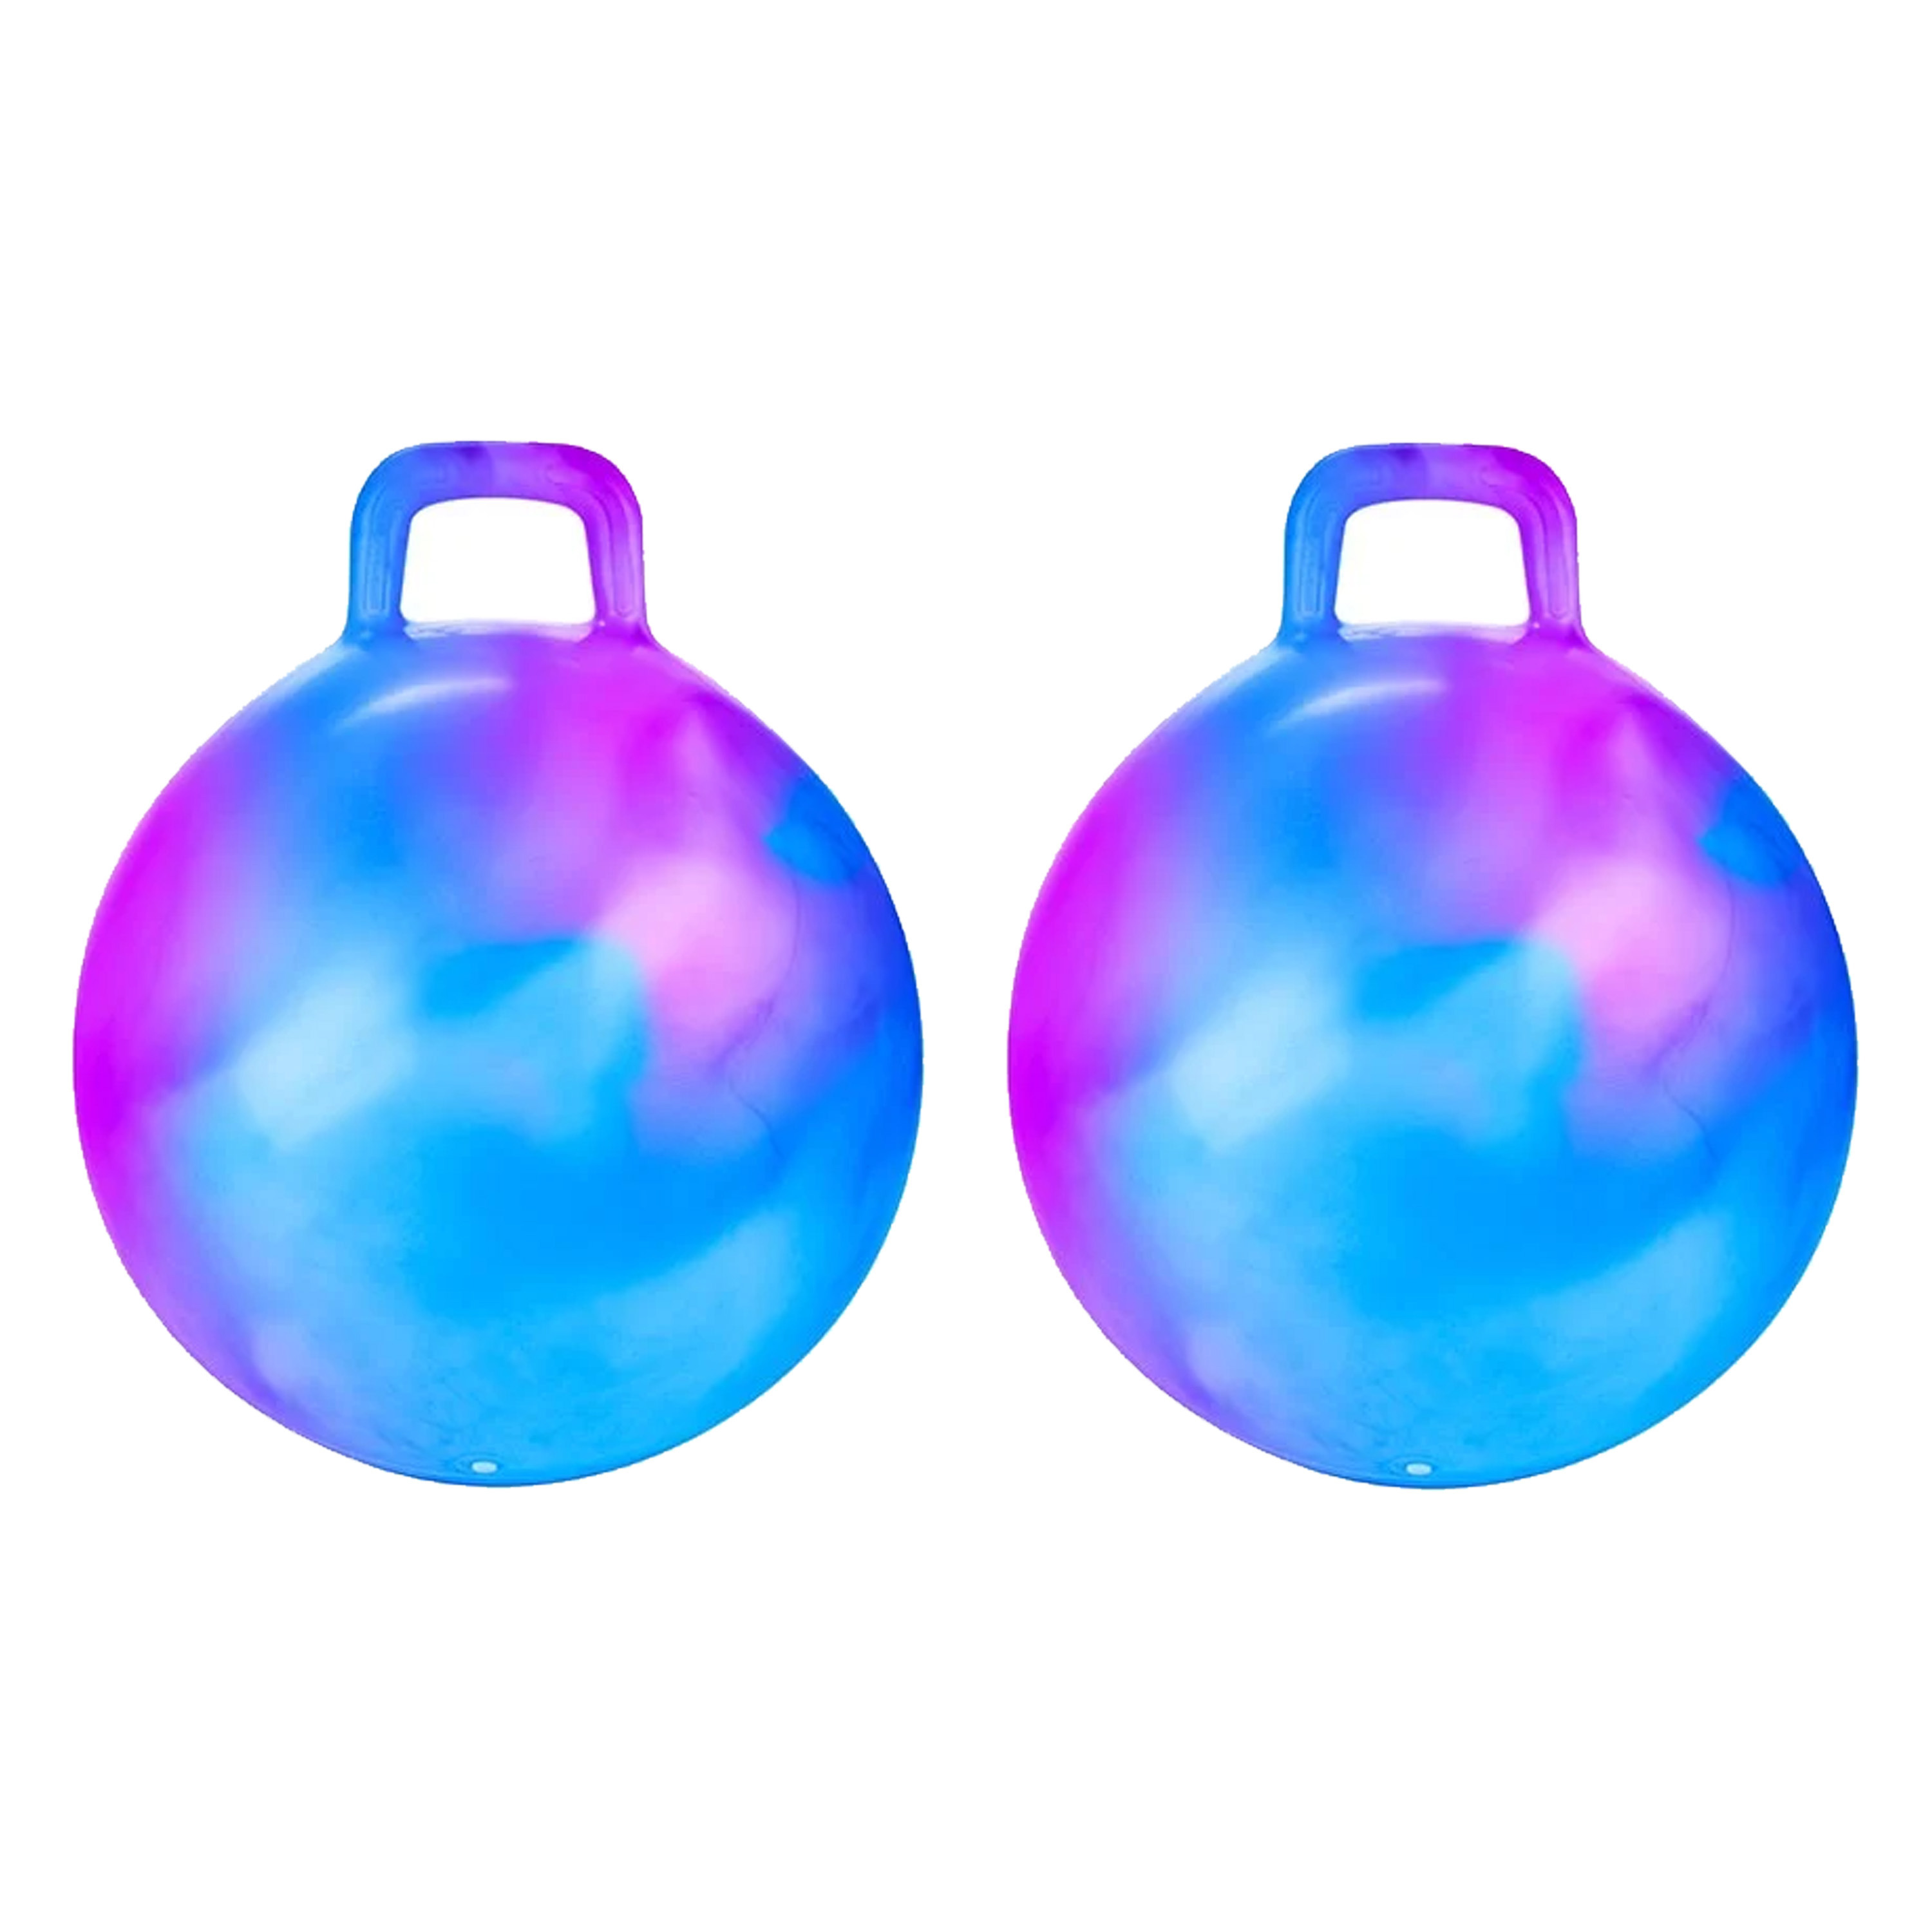 Skippybal marble - 2x - blauw/paars - D45 cm - buitenspeelgoed voor kinderen -